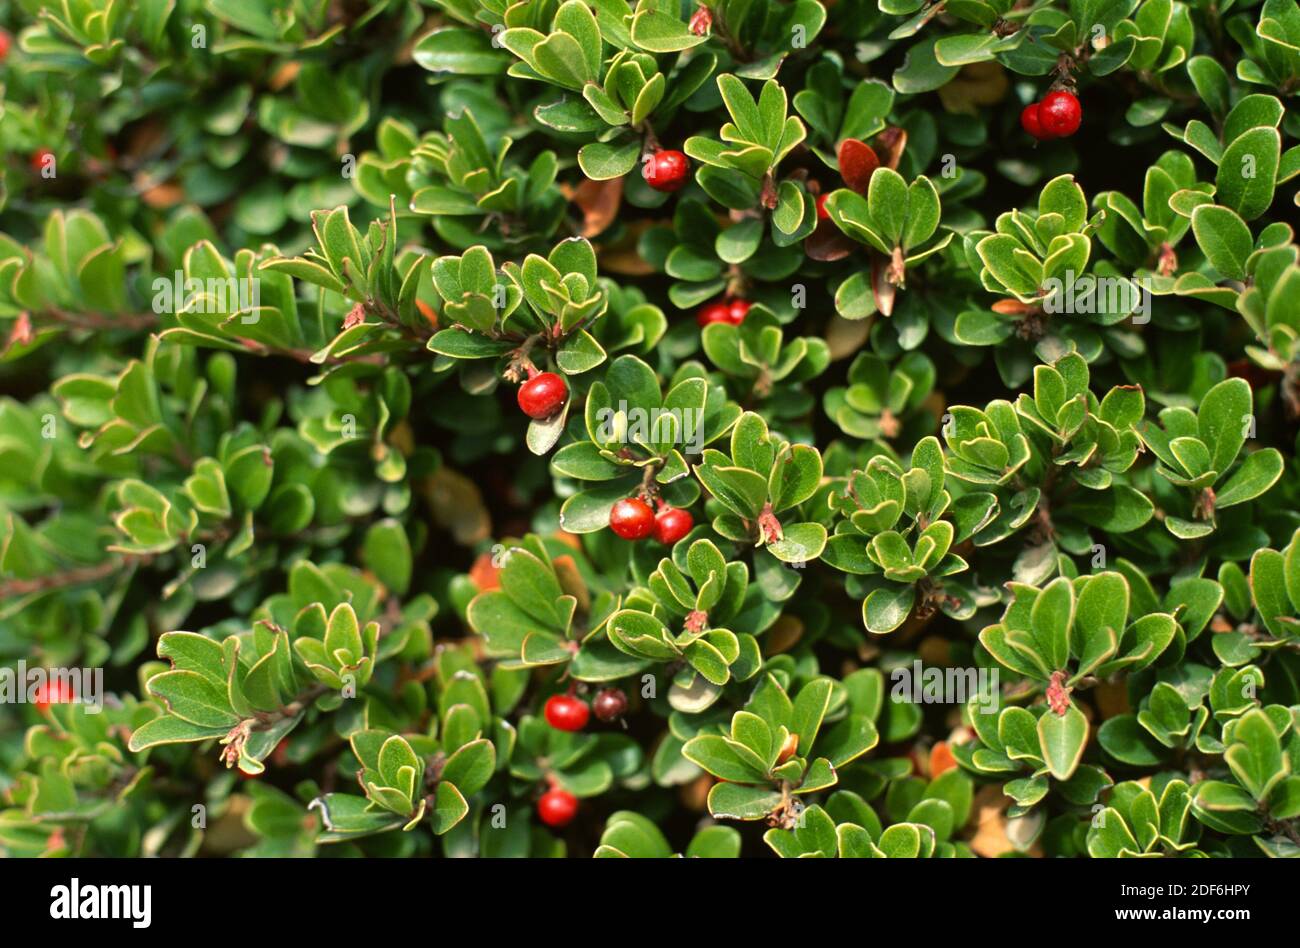 Arándano (Arctostaphylos uva-ursi) es un arbusto procumbente medicinal nativo de las latitudes y montañas del norte de Europa, América del Norte y Asia. Foto de stock